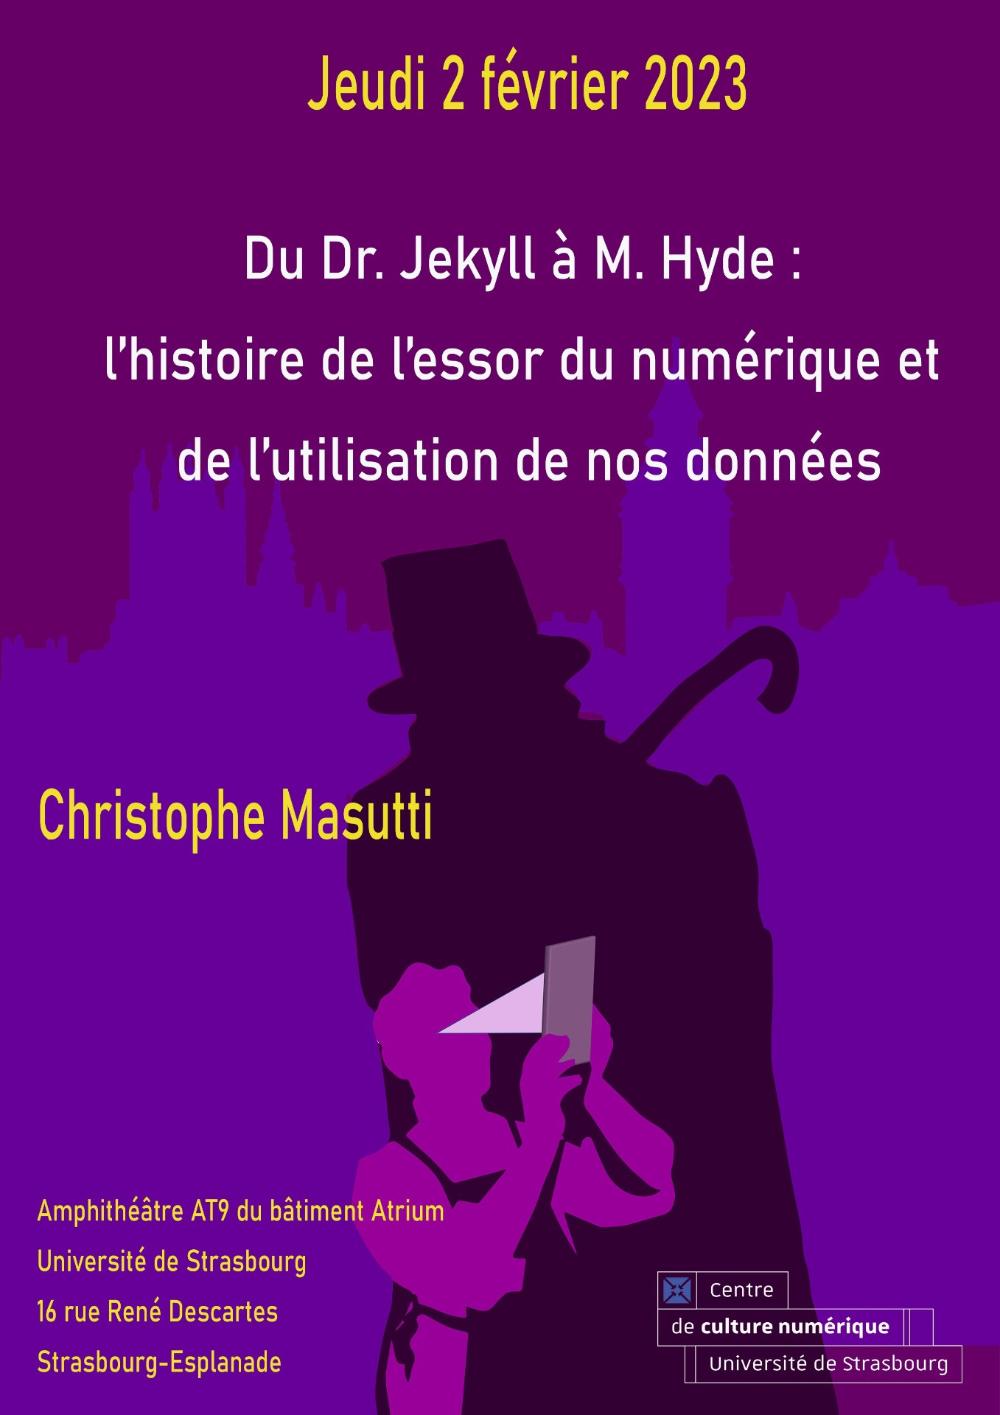 Du Dr. Jekyll à M. Hyde : une histoire de l’essor du numérique à travers l’utilisation de nos données